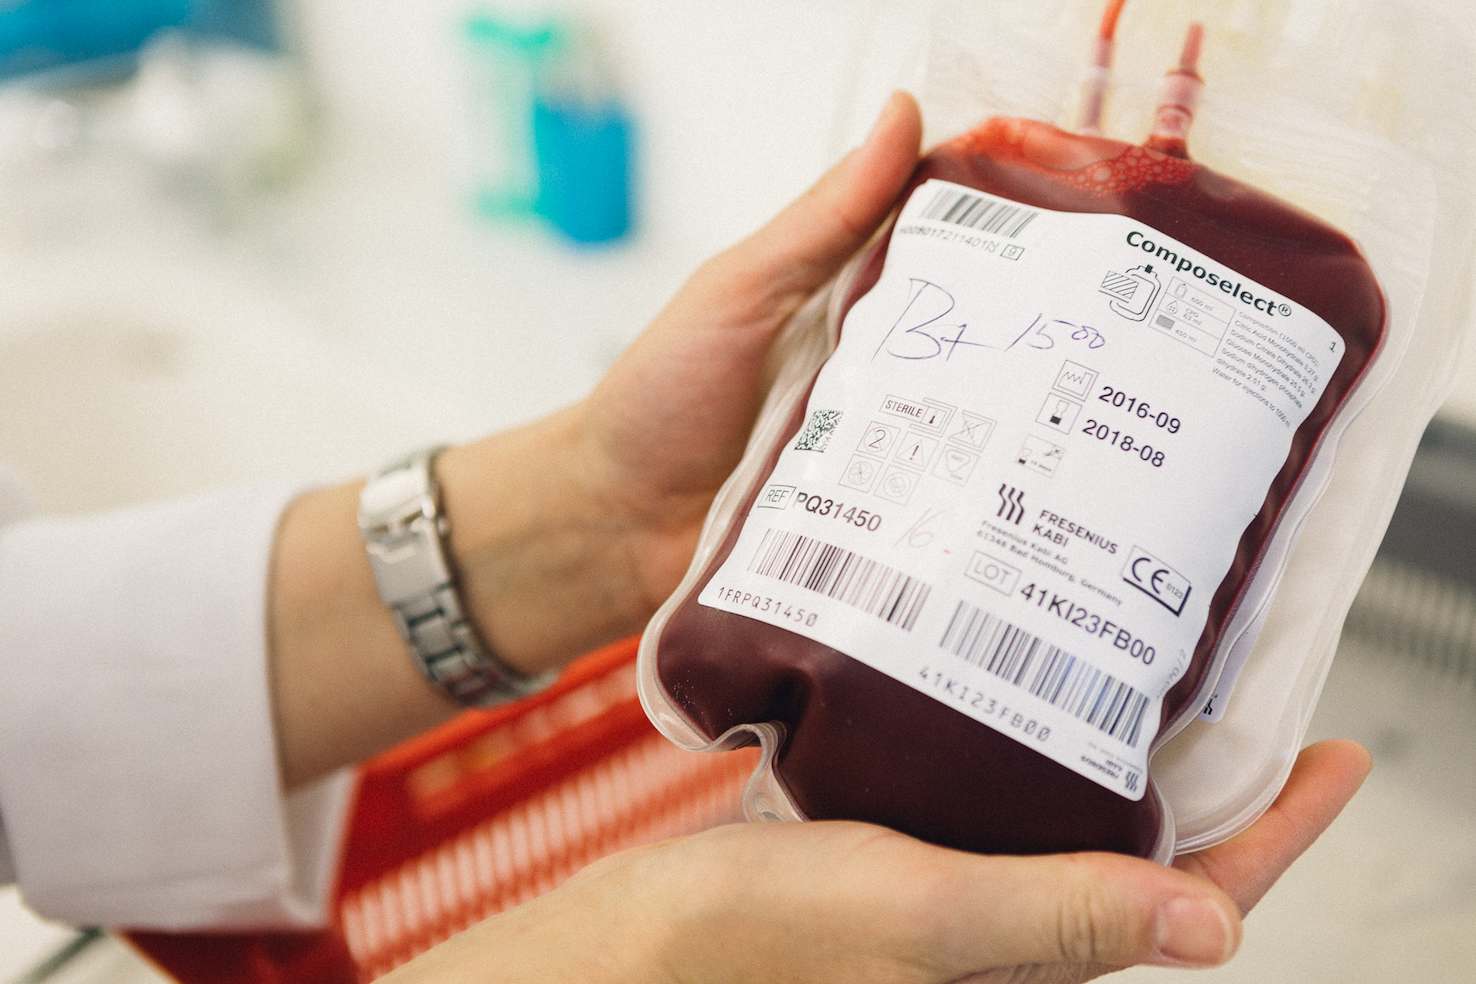 Operare evitando le trasfusioni di sangue si può. E’ la chirurgia bloodless